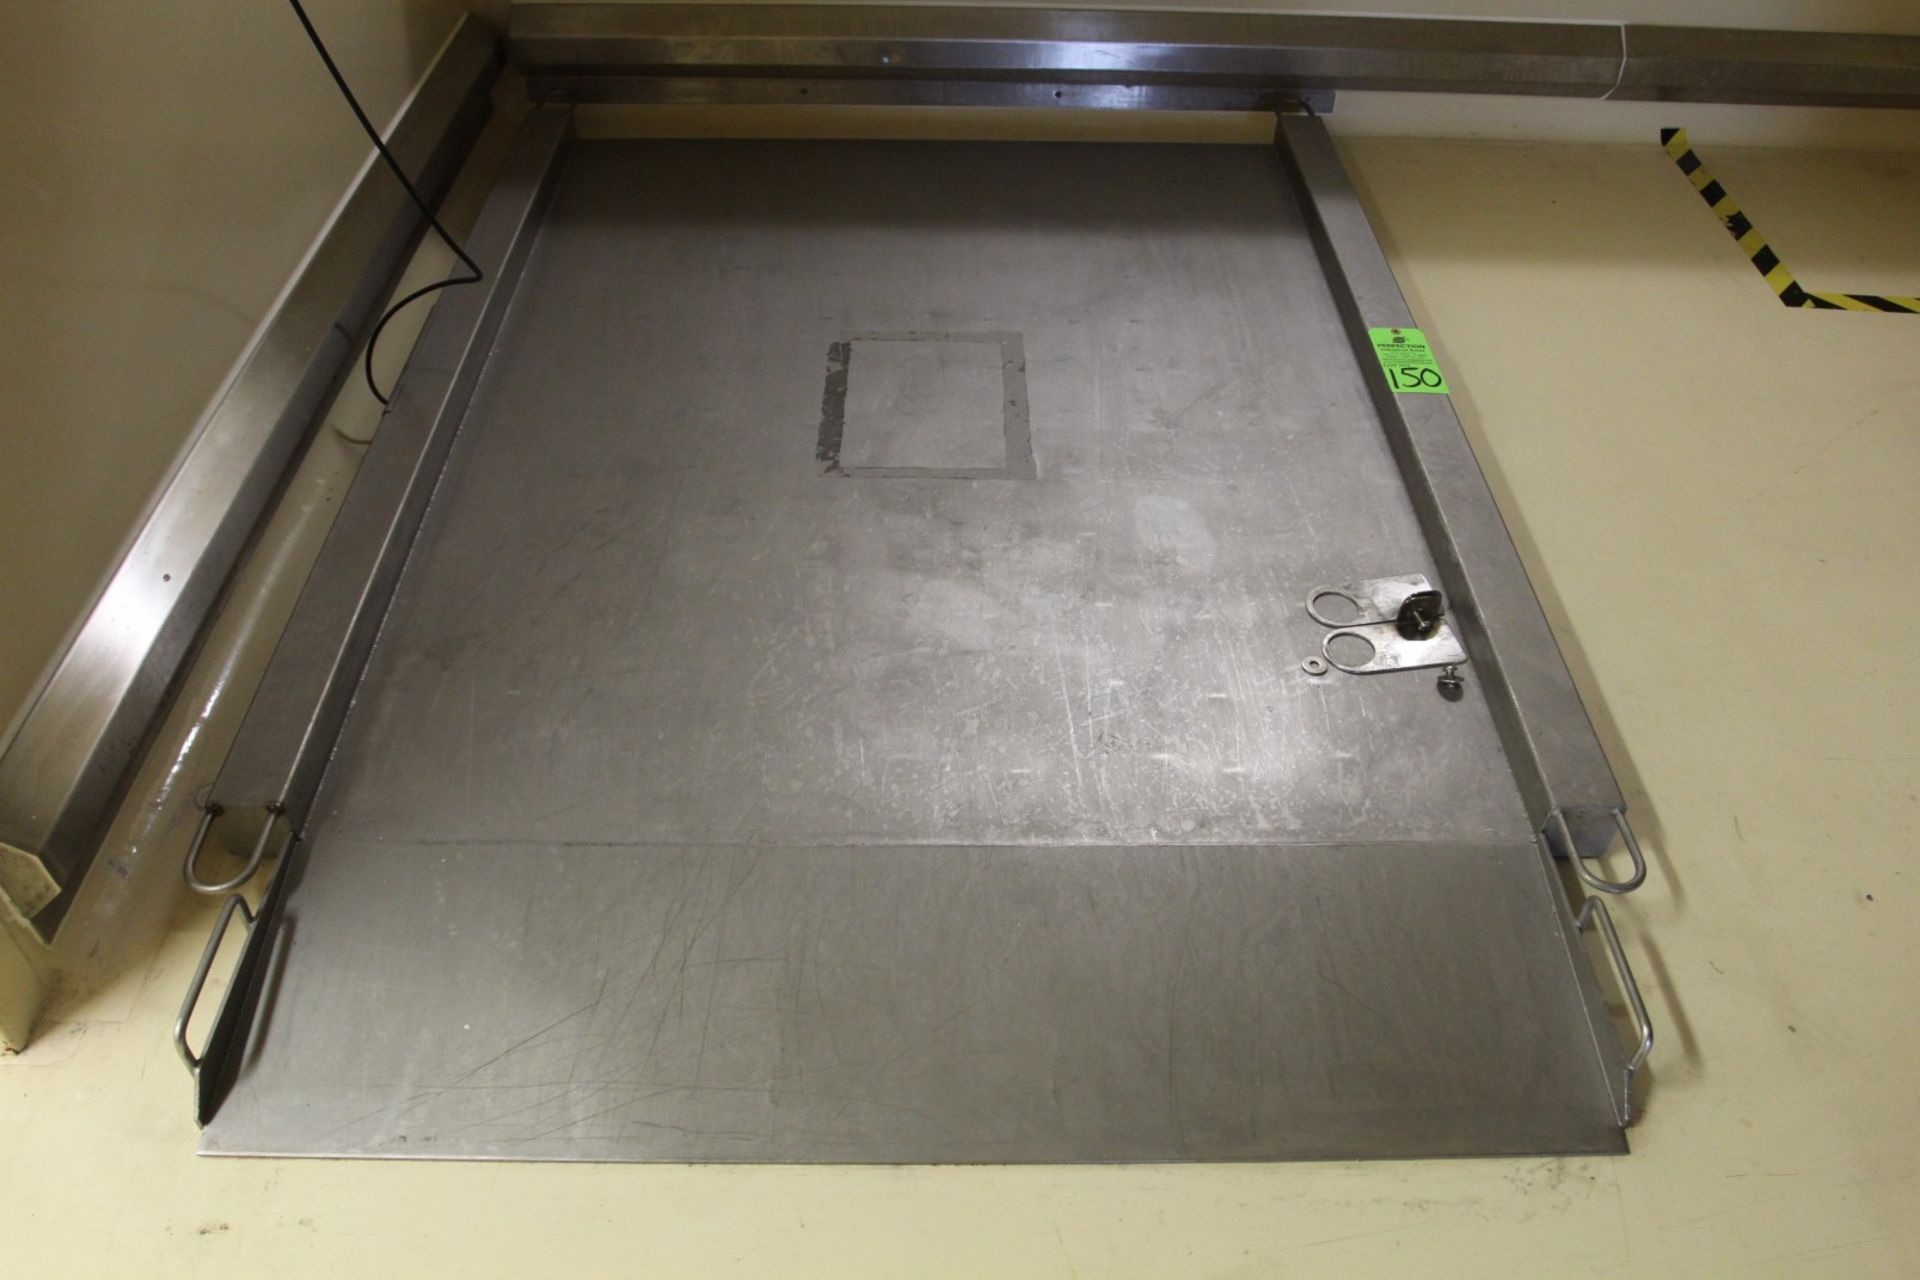 800 kg Stainless Steel Floor Scale w/ Mettler Toledo Lynx Digital Readout, s/n 5502846-5LG - Image 2 of 4